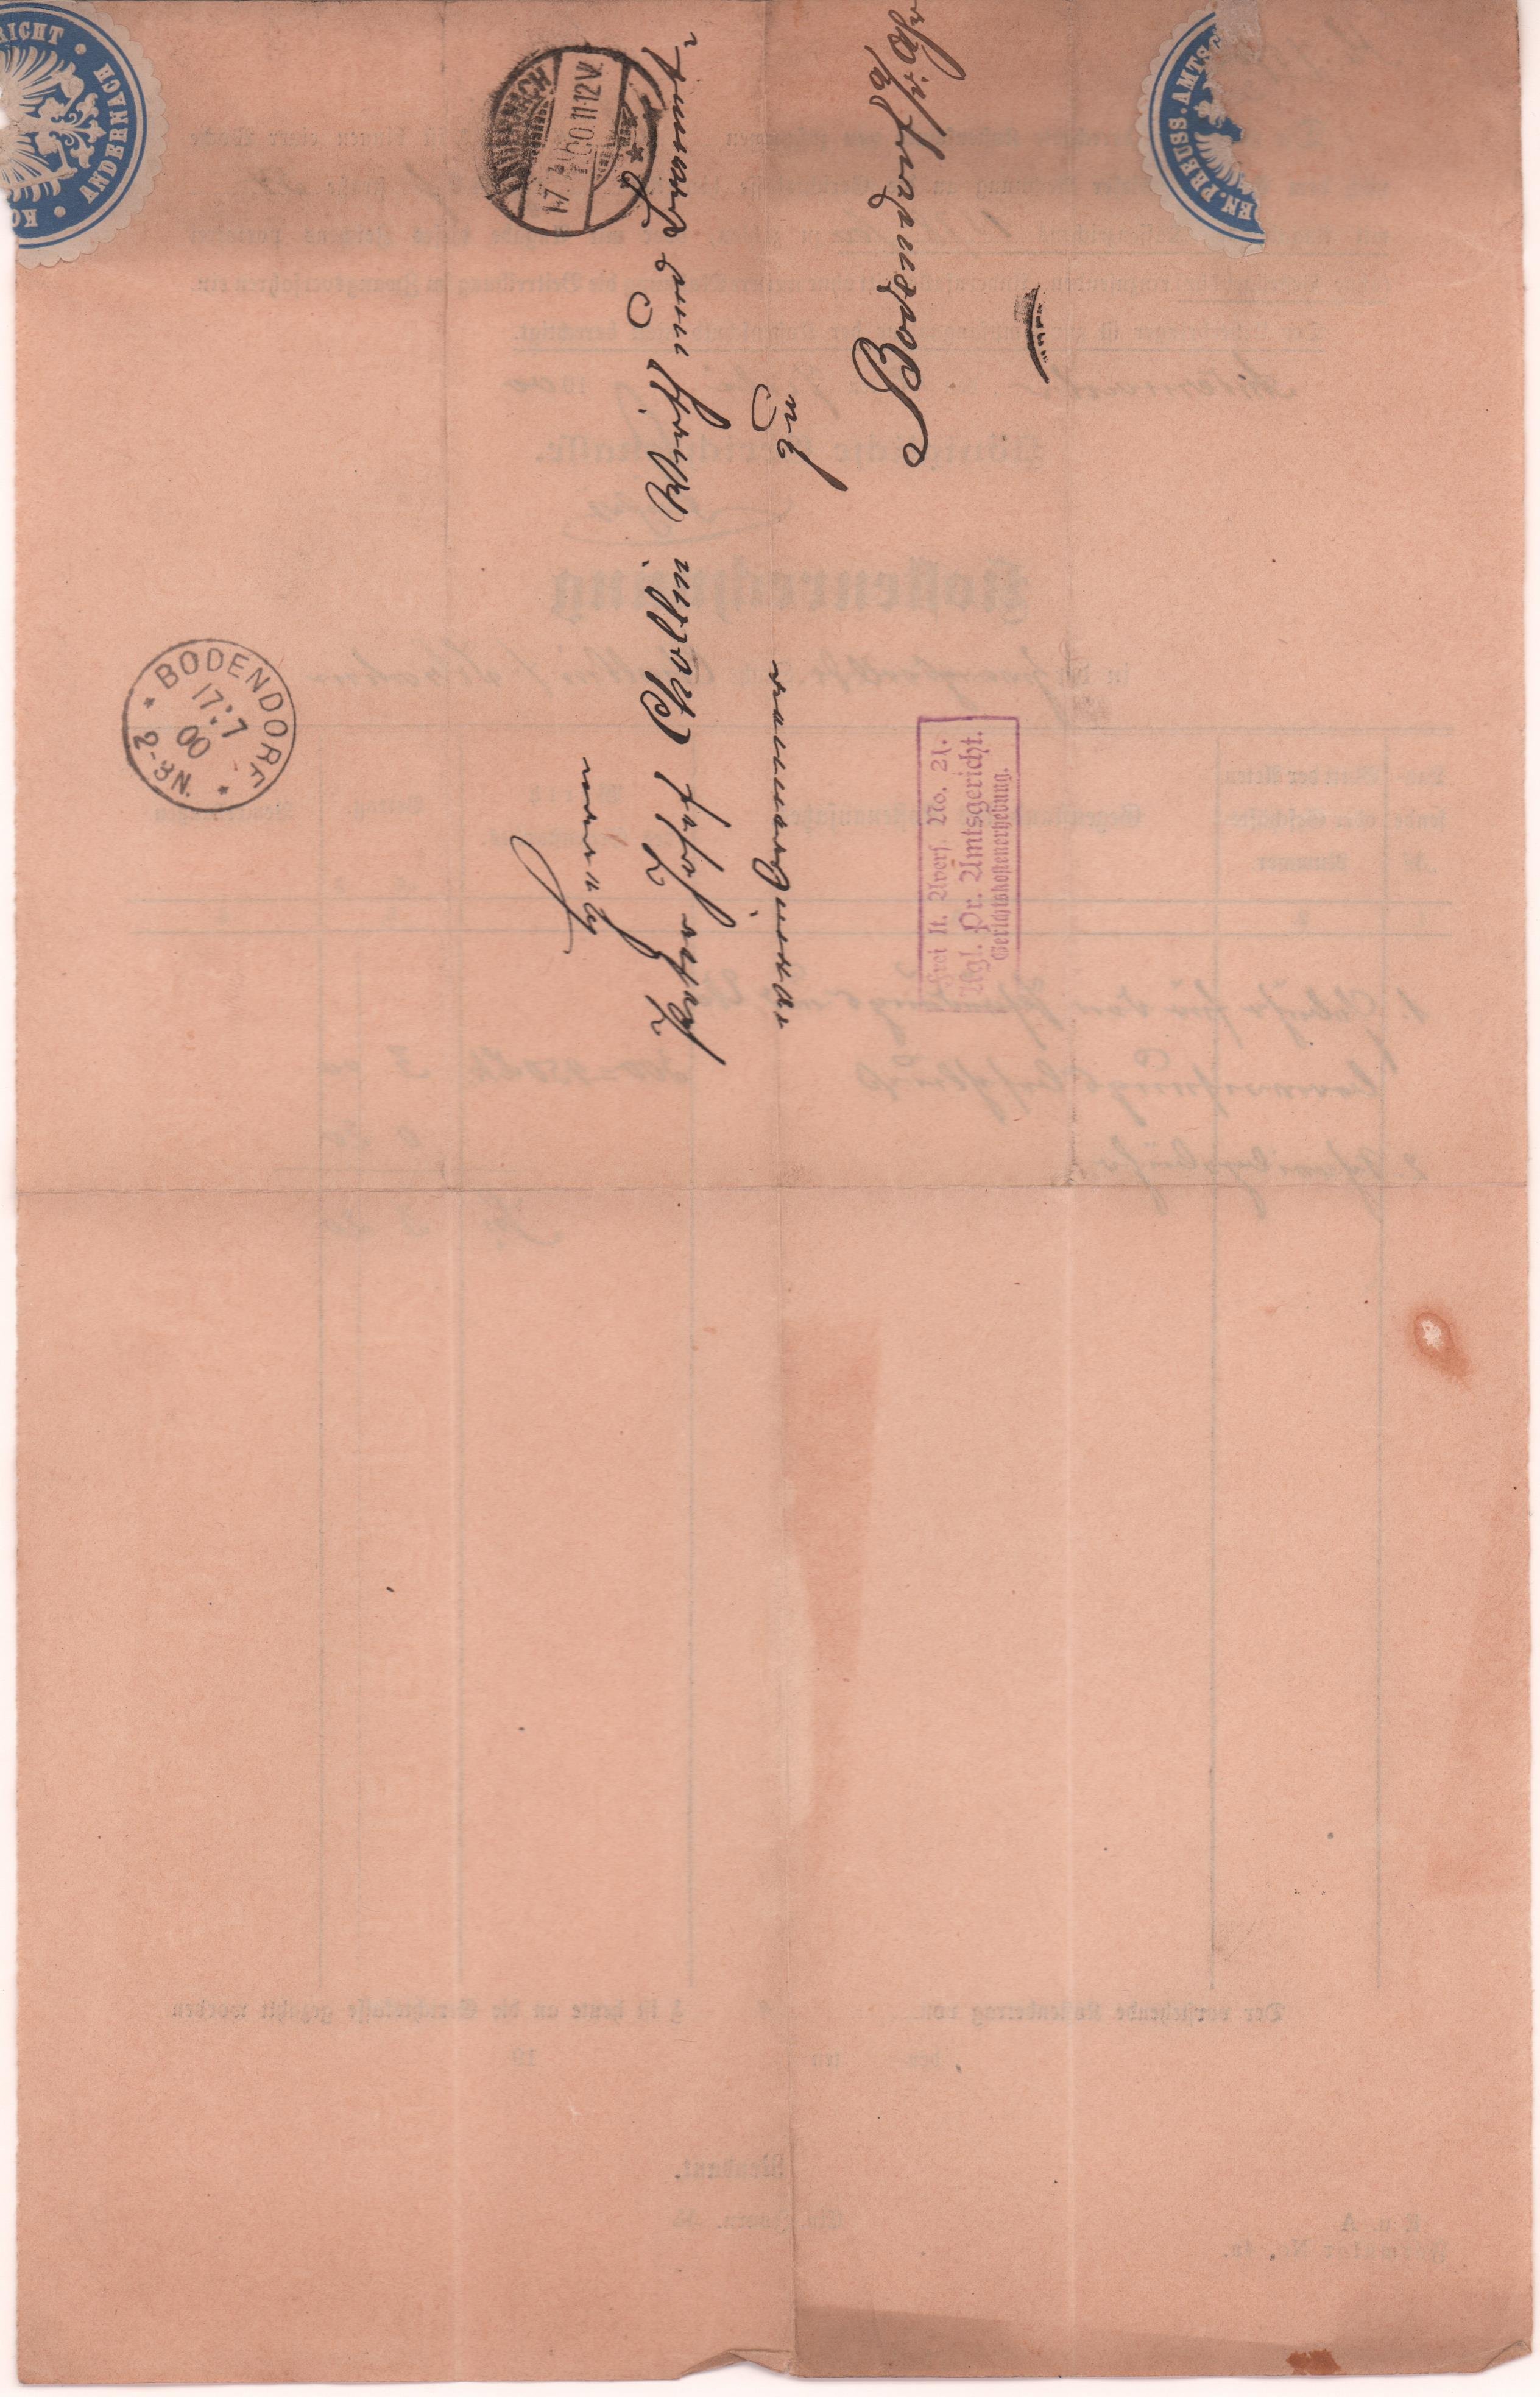 Kostenrechnung des Königlichen Amtsgerichtes Andernach in der Zwangsvollstreckungssache Cholin/Kran vom 12. Juli 1900 (Heimatarchiv Bad Bodendorf CC BY-NC-SA)